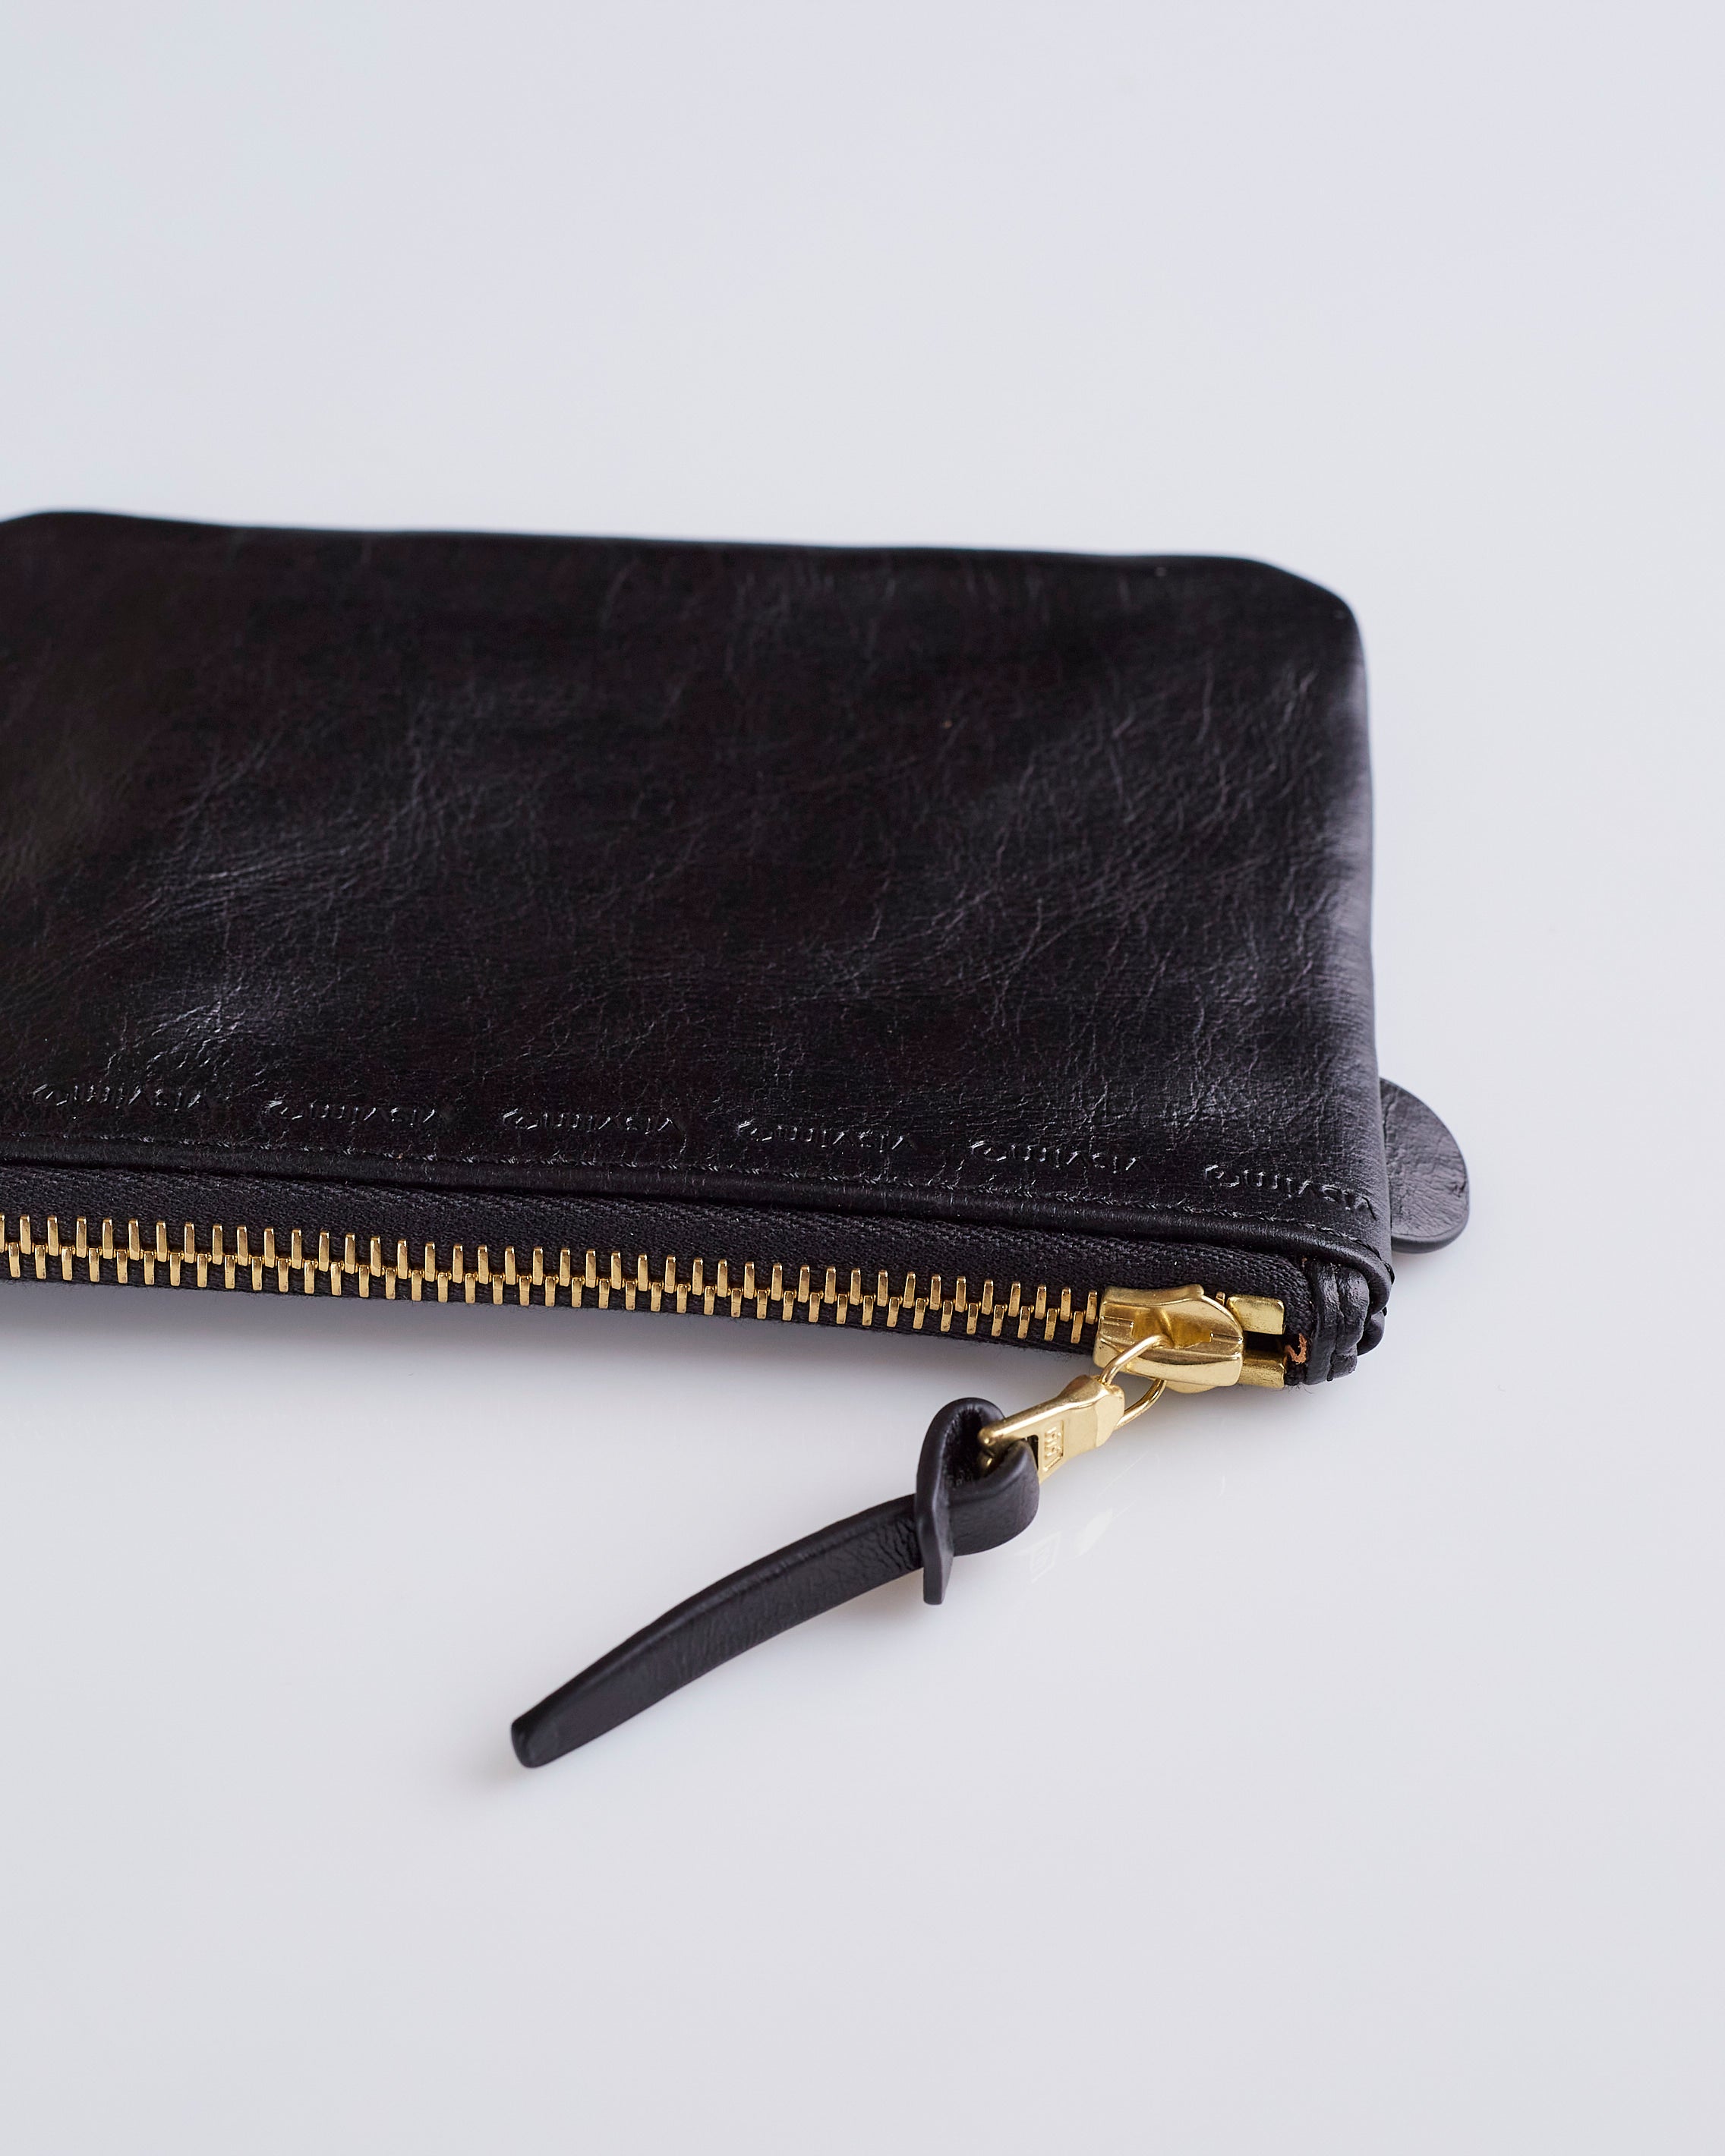 visvim Leather Essentials Case Black – LESS 17